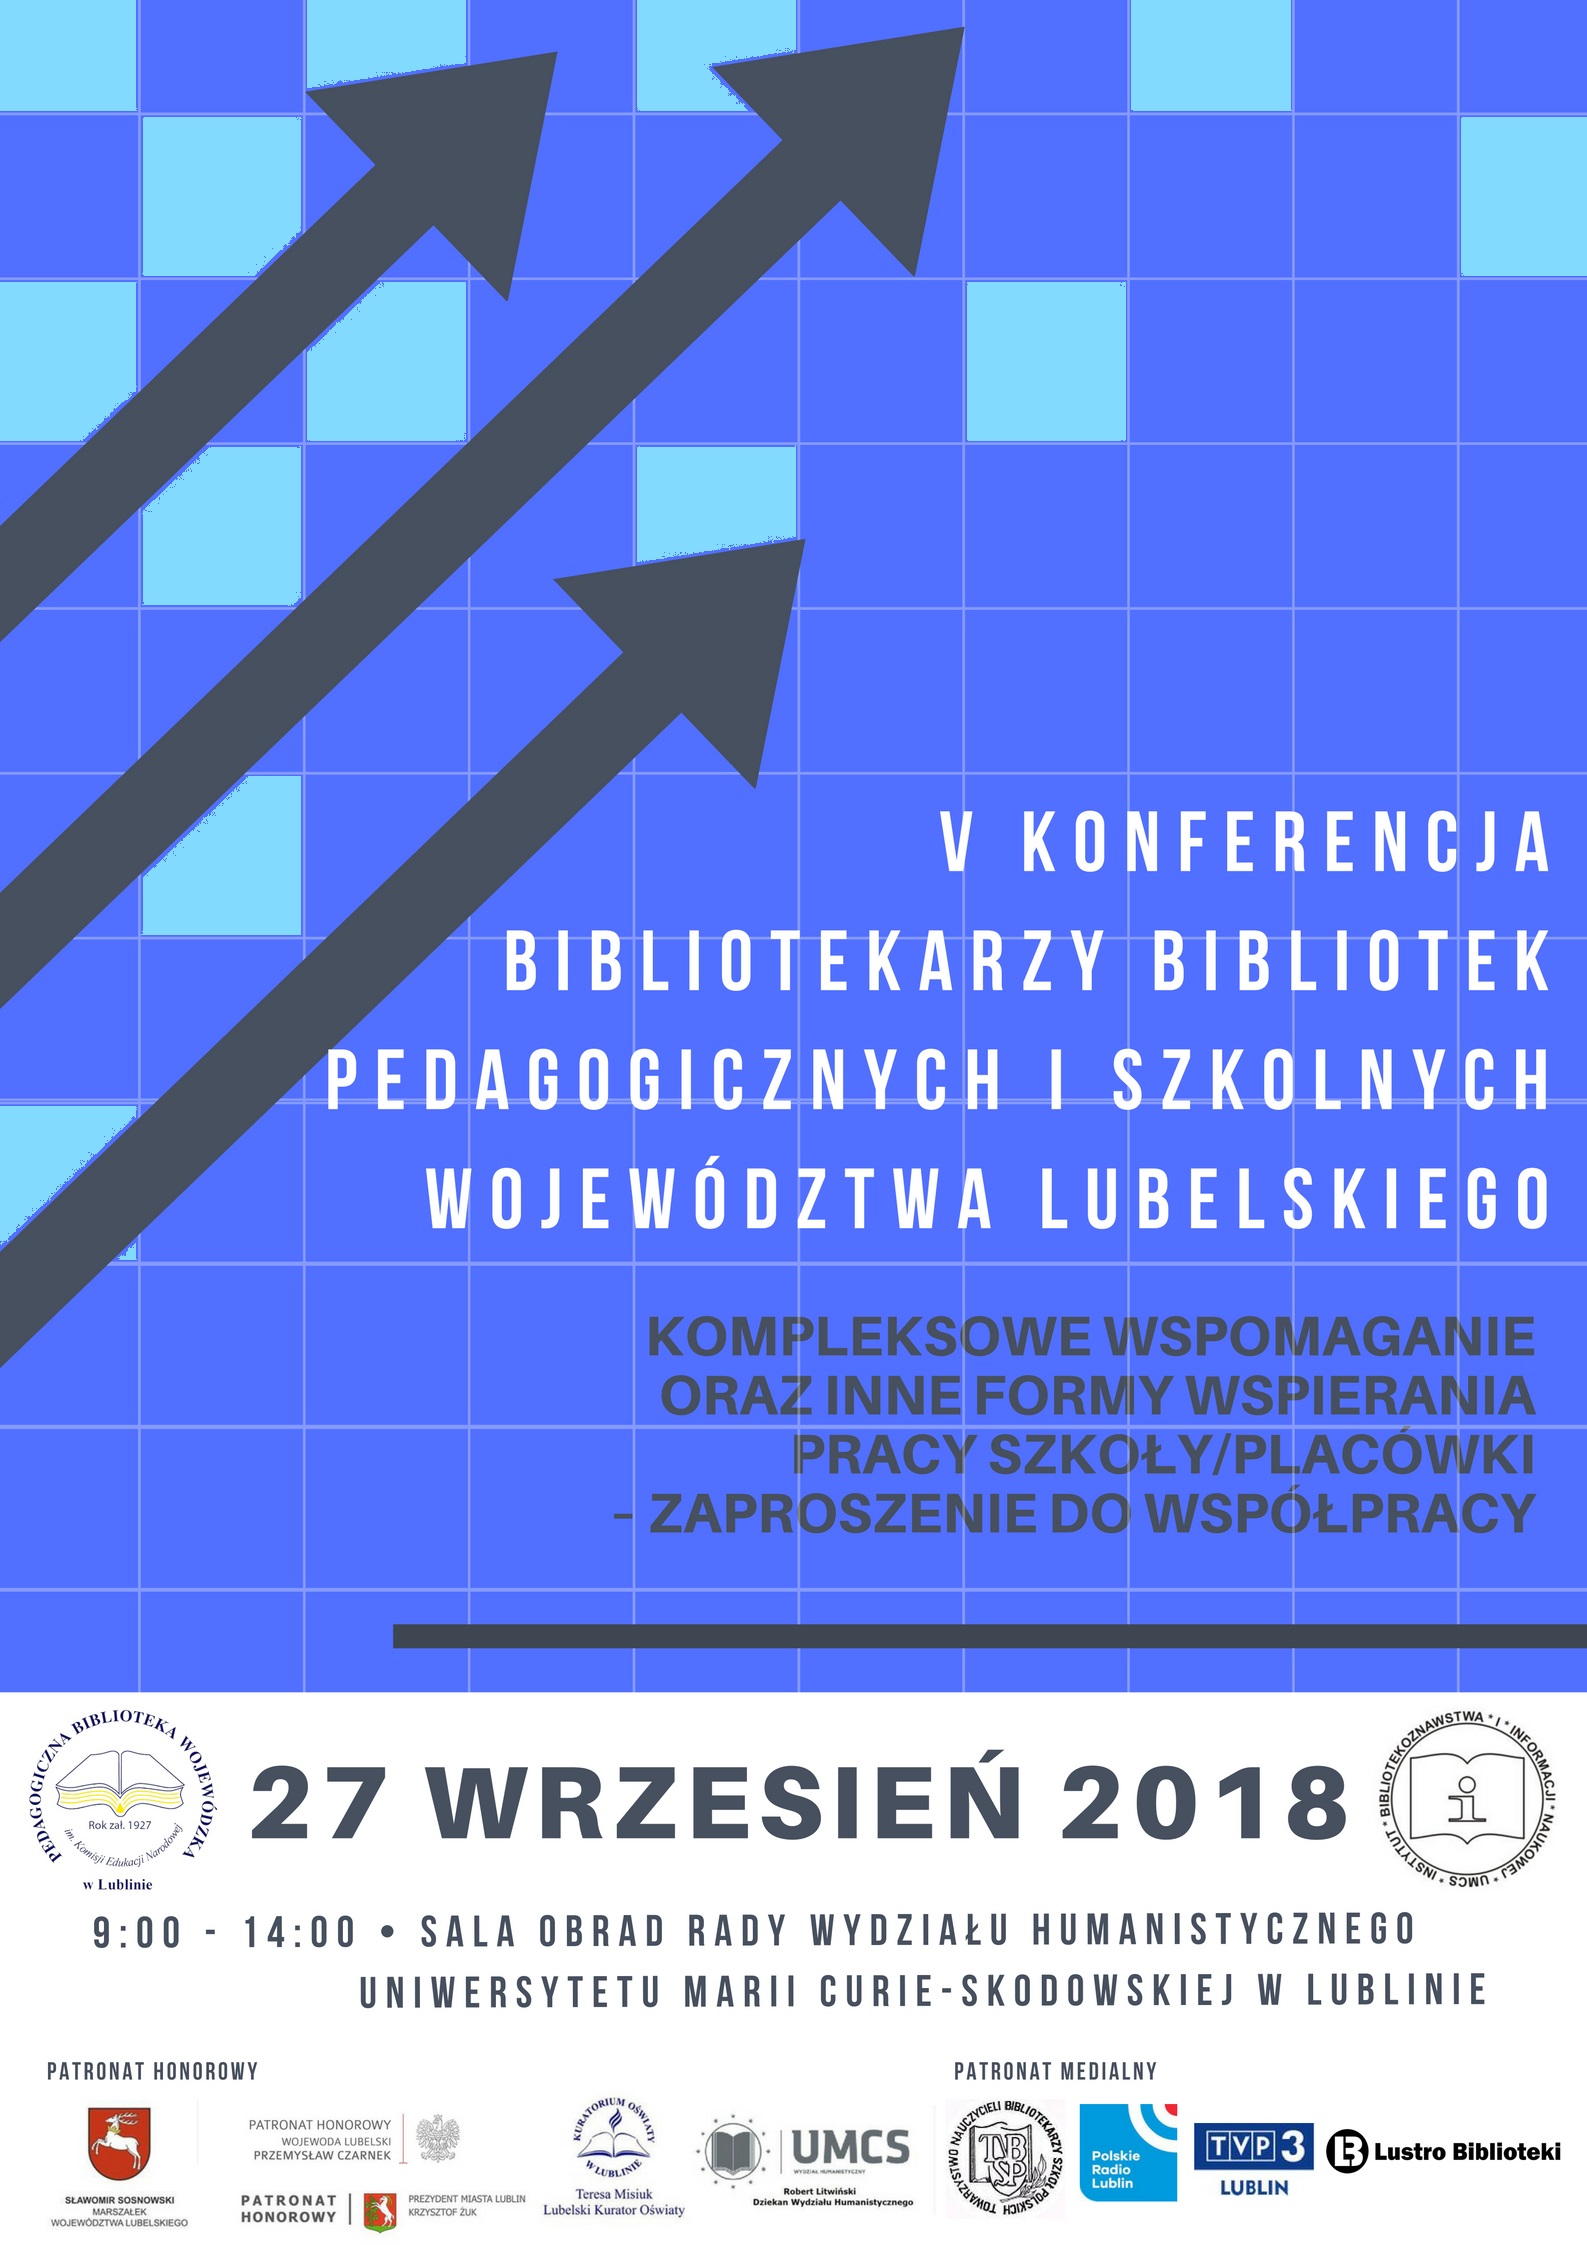 Konferencja bibliotekarzy bibliotek pedagogicznych i szkolnych woj. lubelskiego